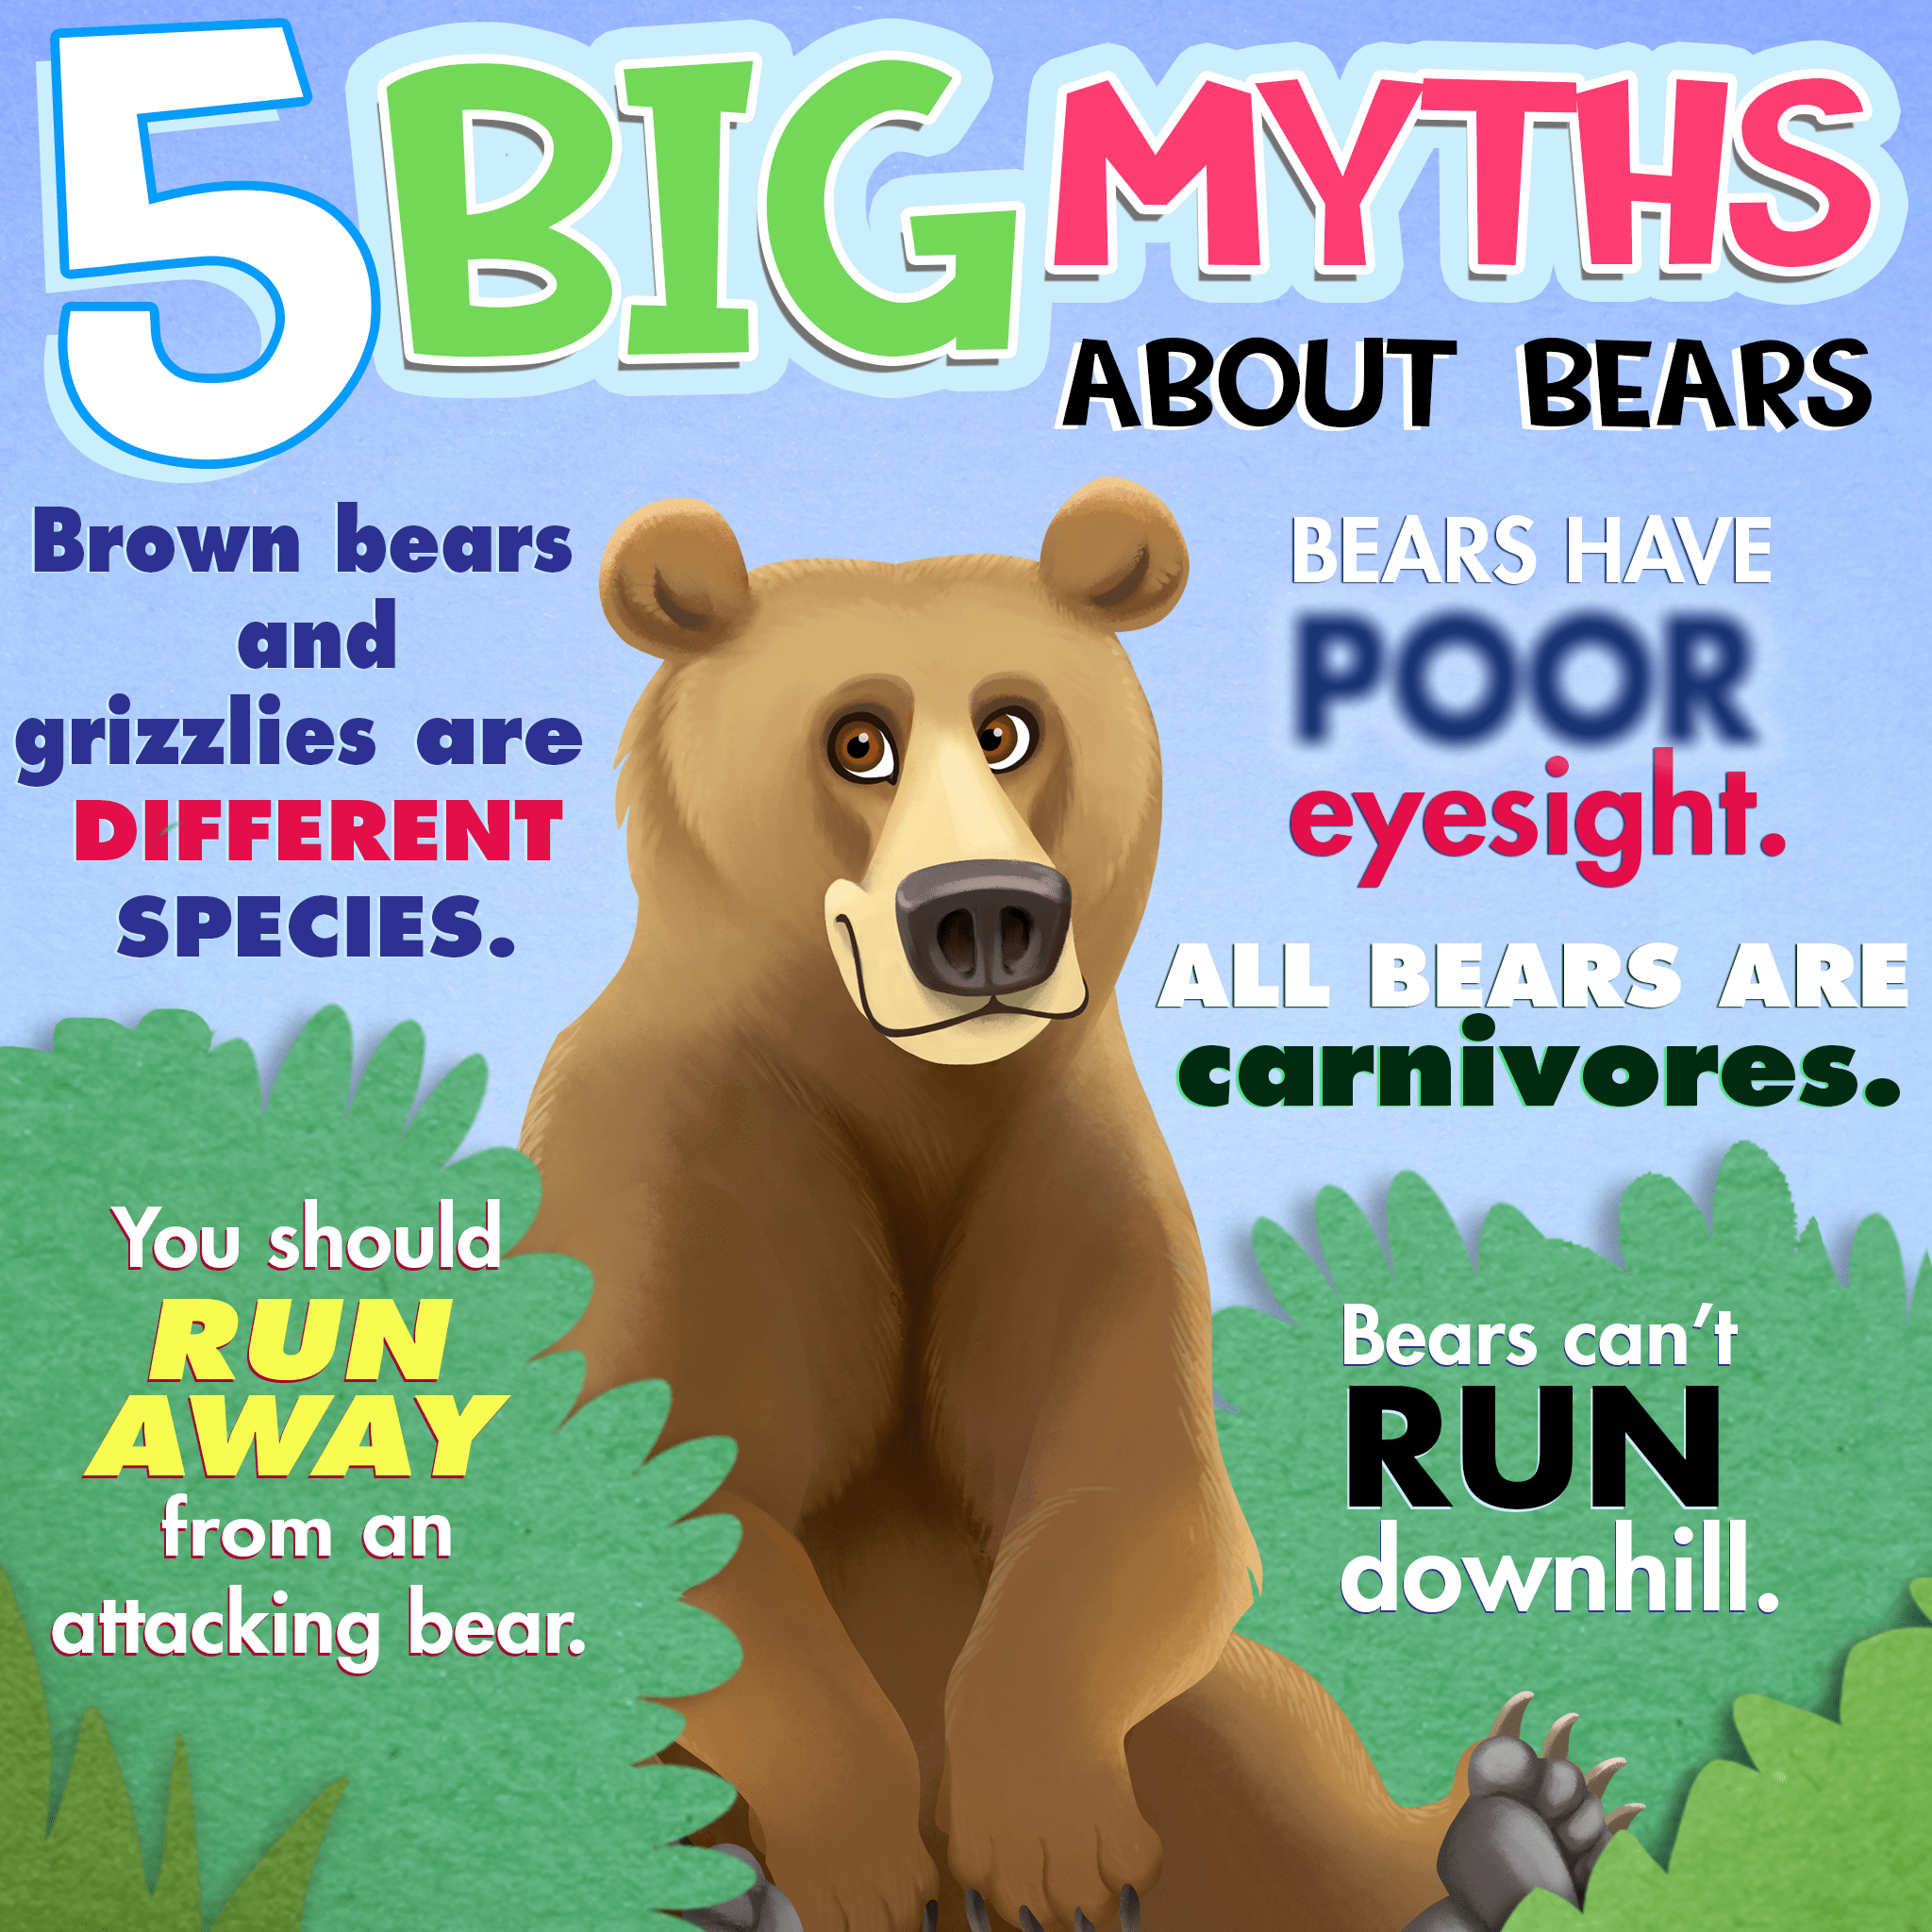 Why Bears? 